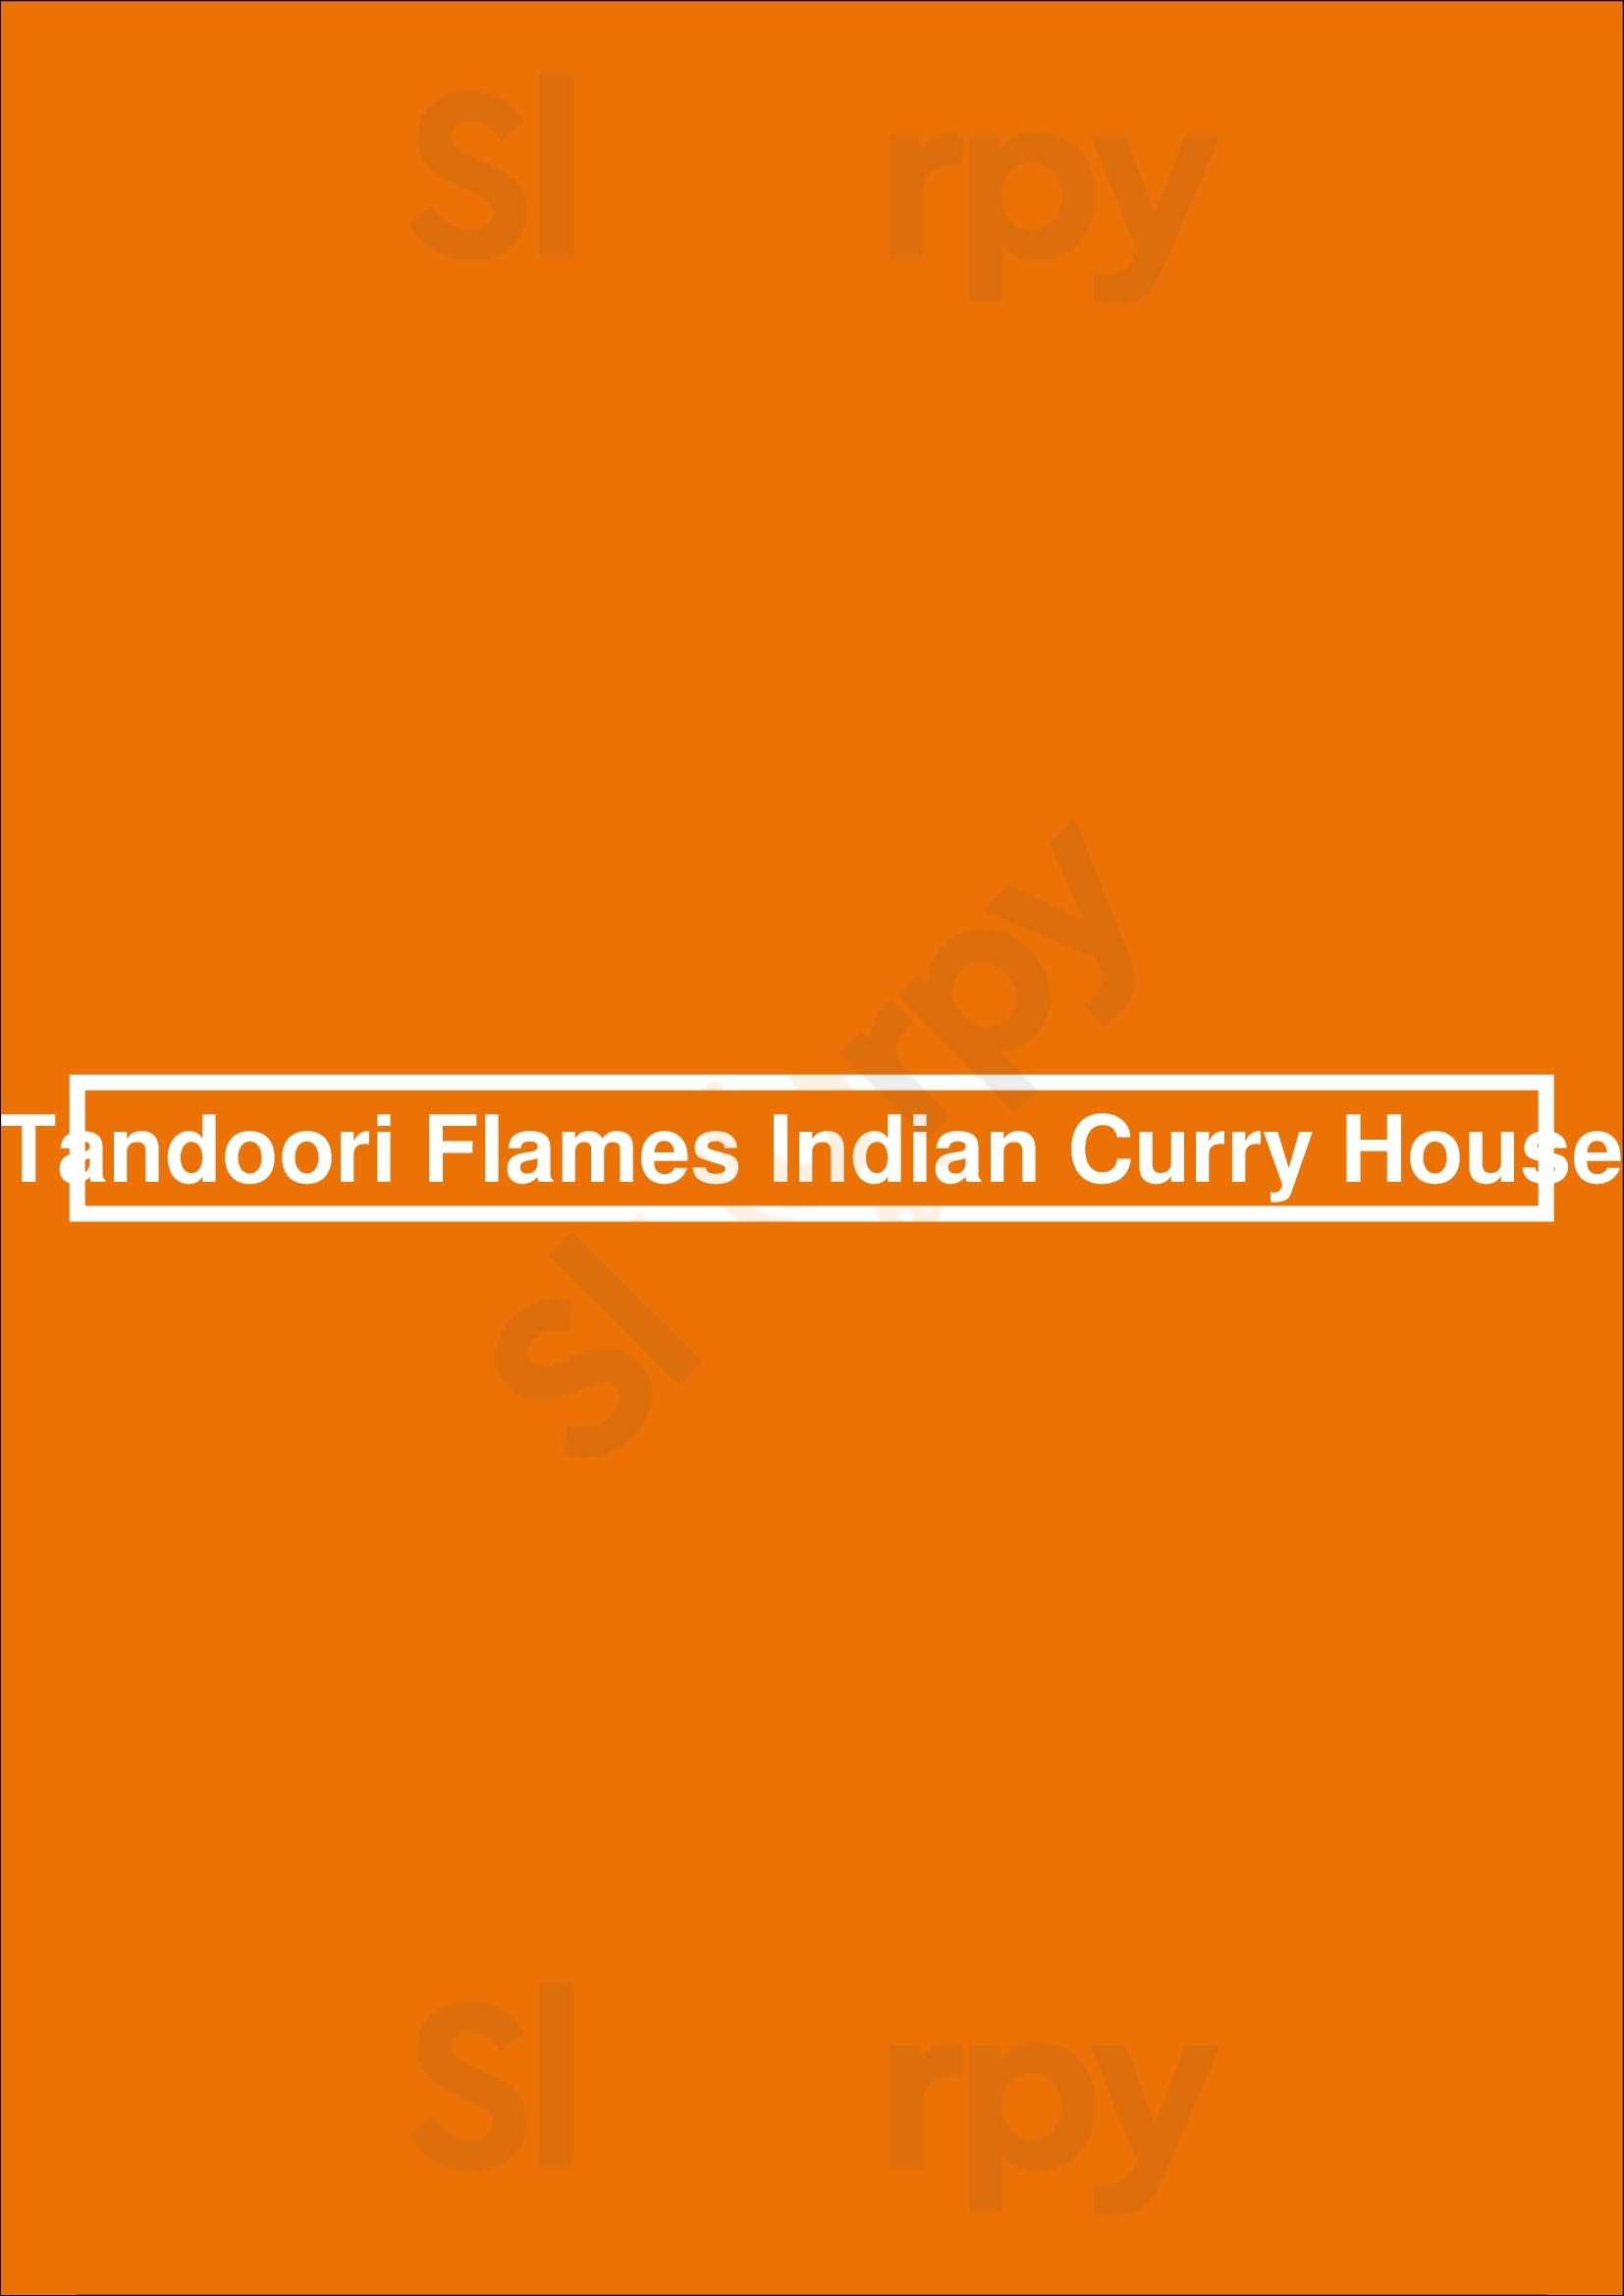 Tandoori Flames Indian Curry House Claremont Menu - 1